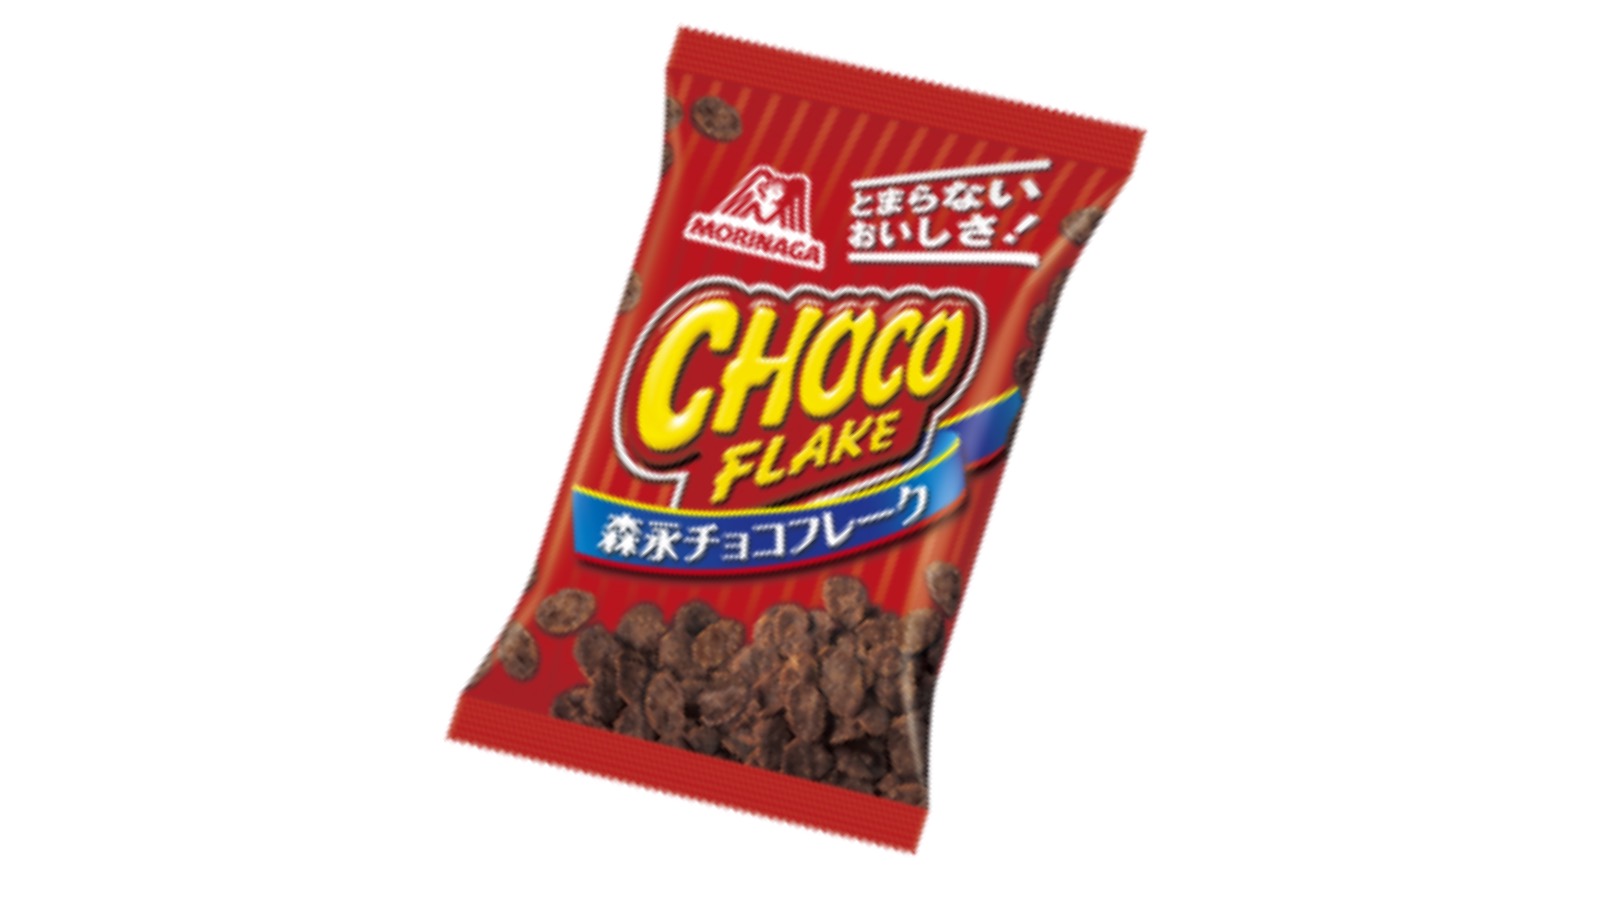 Ein Klassiker: Choco-Flake von Morinaga.